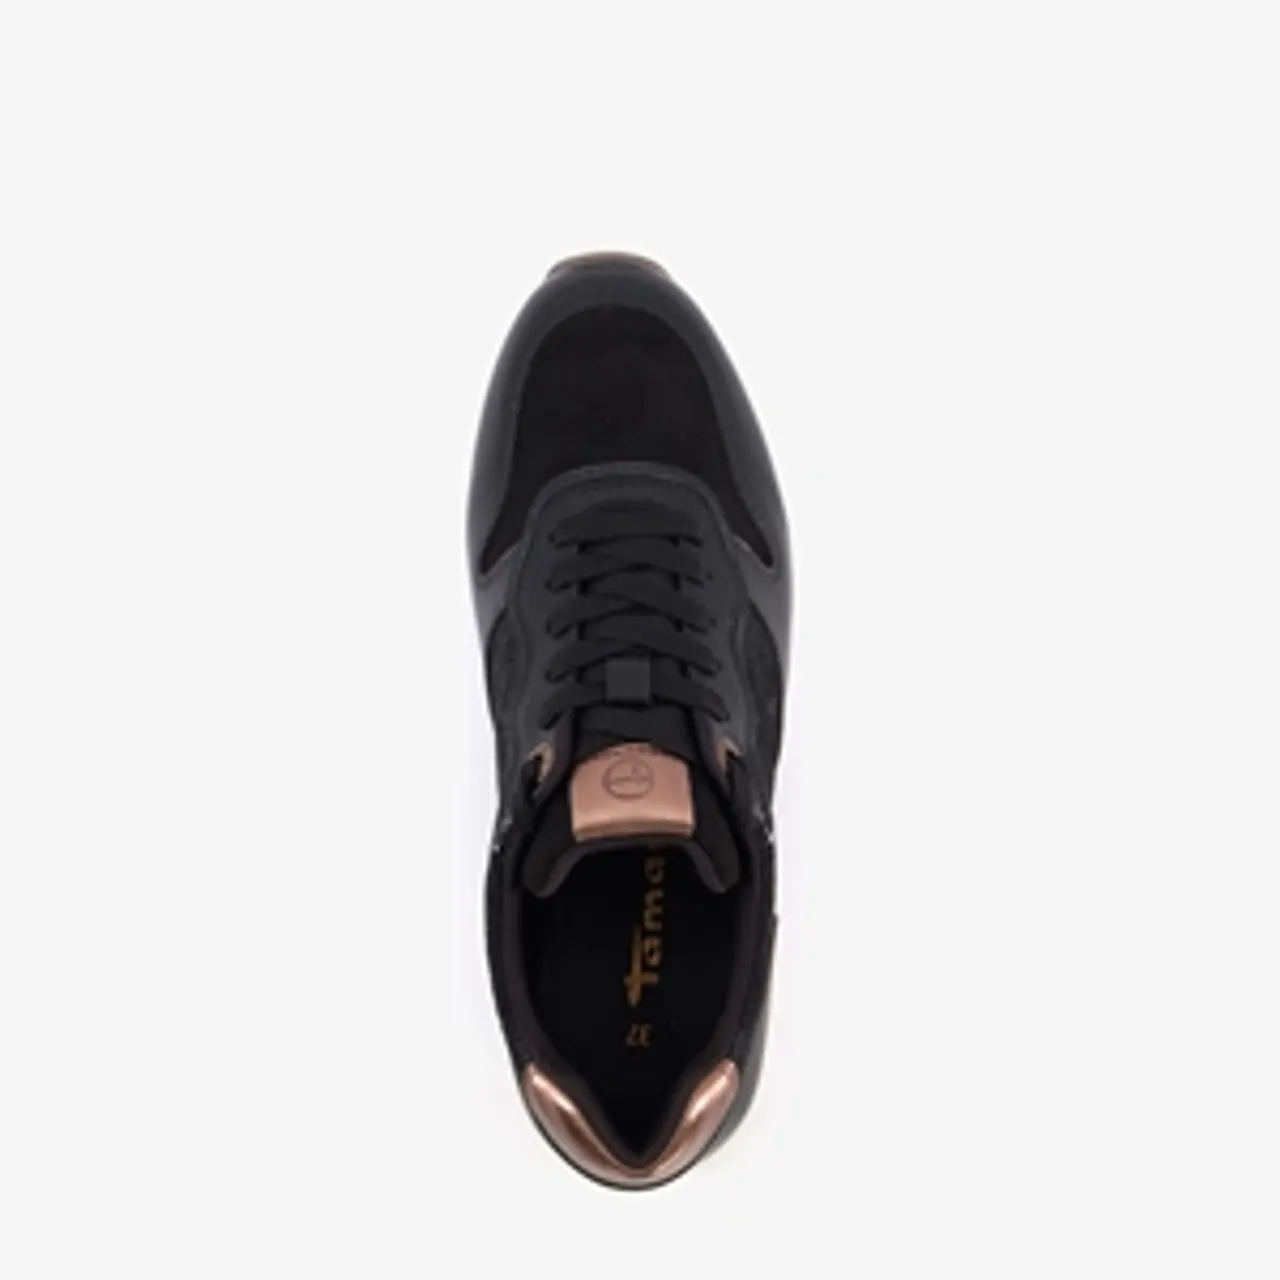 Tamaris dames sneakers zwart met metallic details